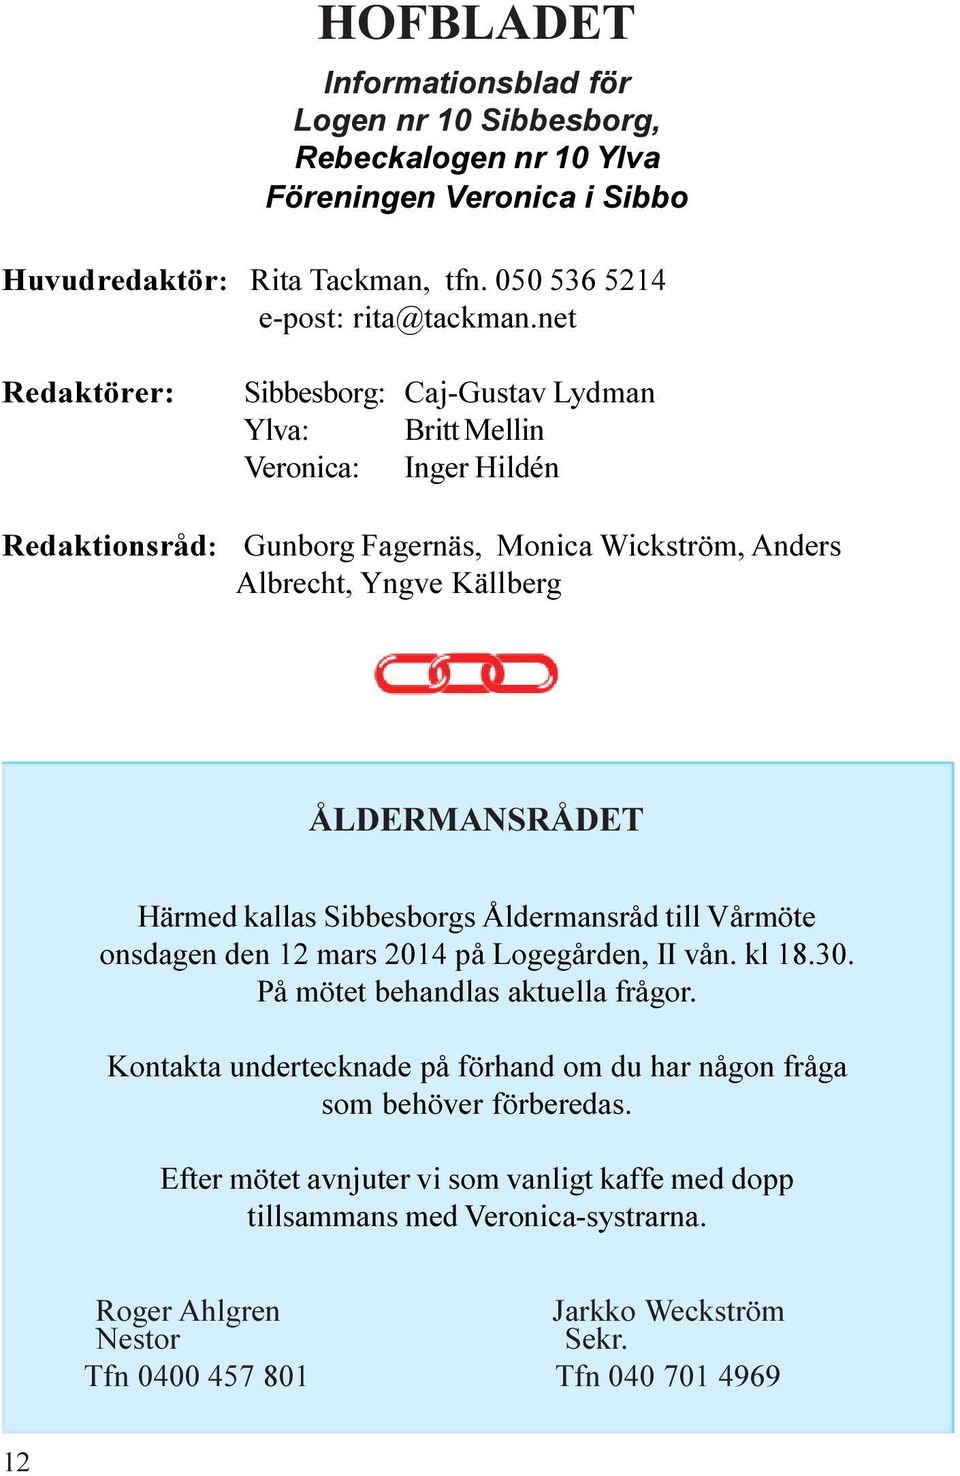 Härmed kallas Sibbesborgs Åldermansråd till Vårmöte onsdagen den 12 mars 2014 på Logegården, II vån. kl 18.30. På mötet behandlas aktuella frågor.